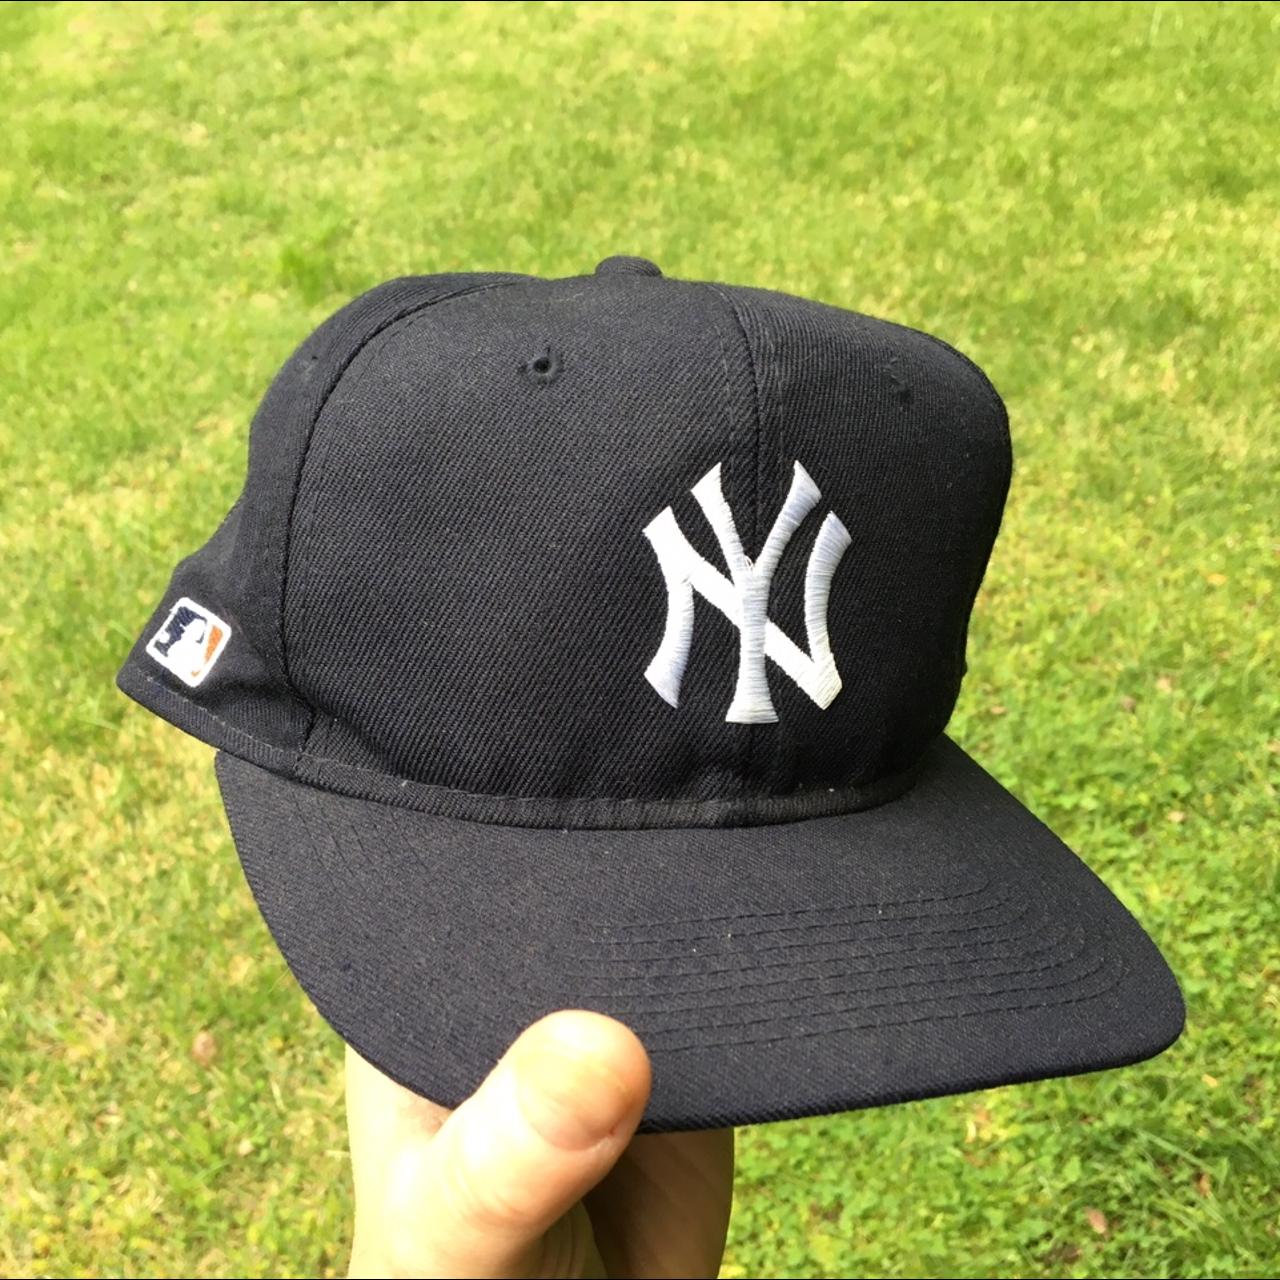 Sports Specialties NY Hats for Men